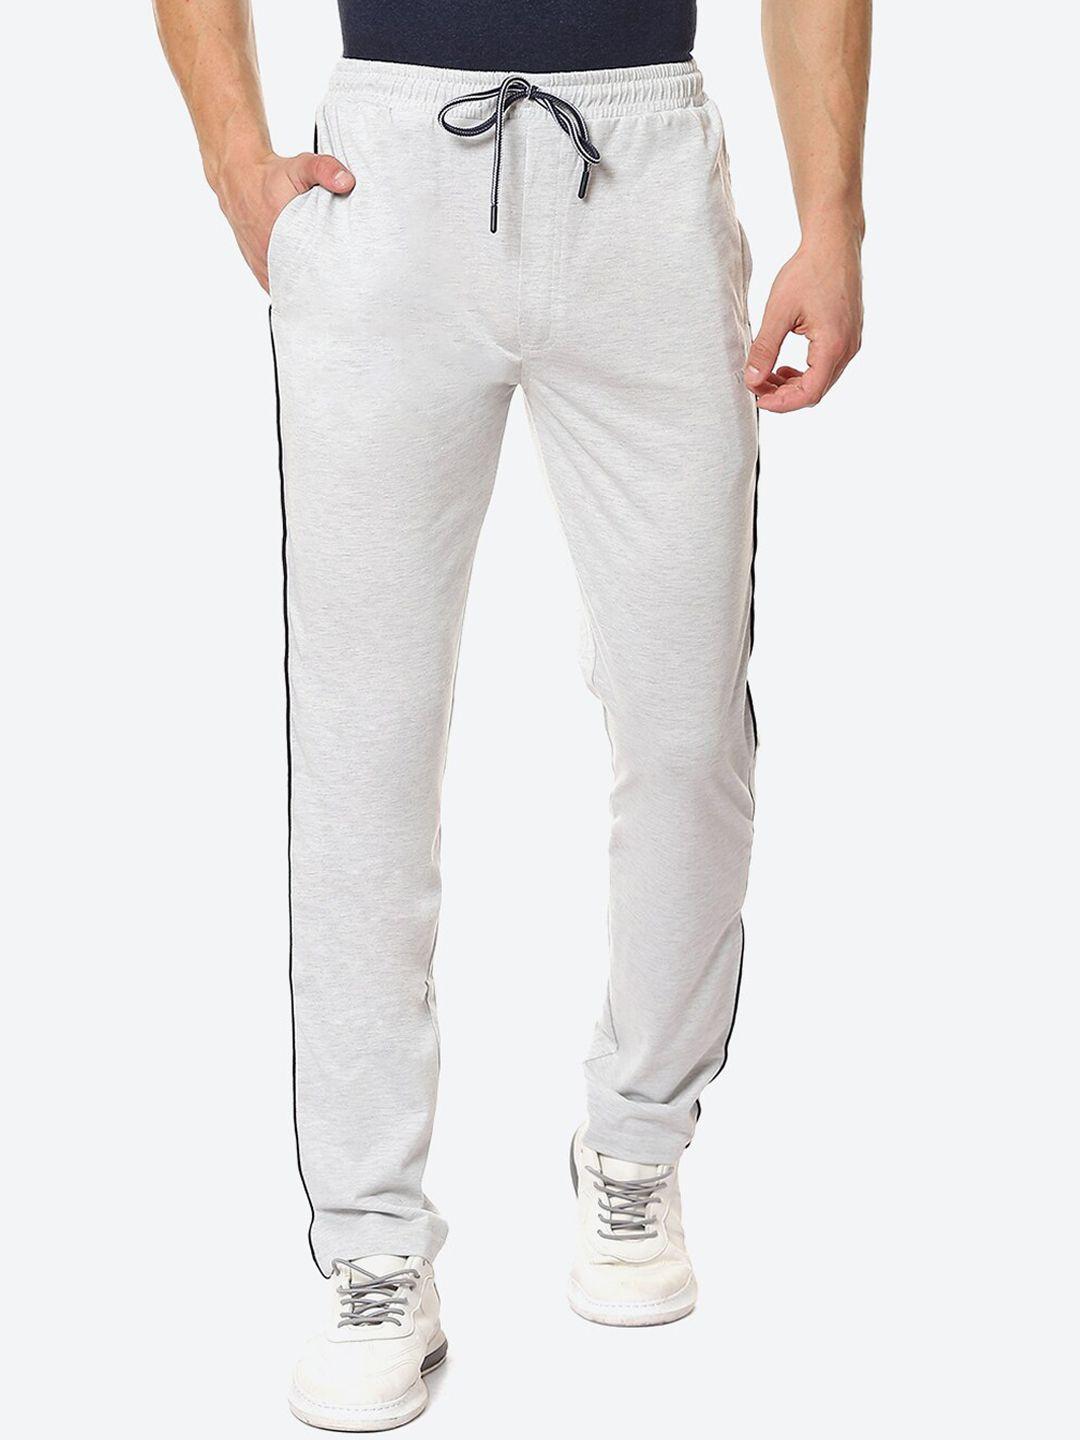 vinenzia-men-grey-solid-regular-fit-track-pants